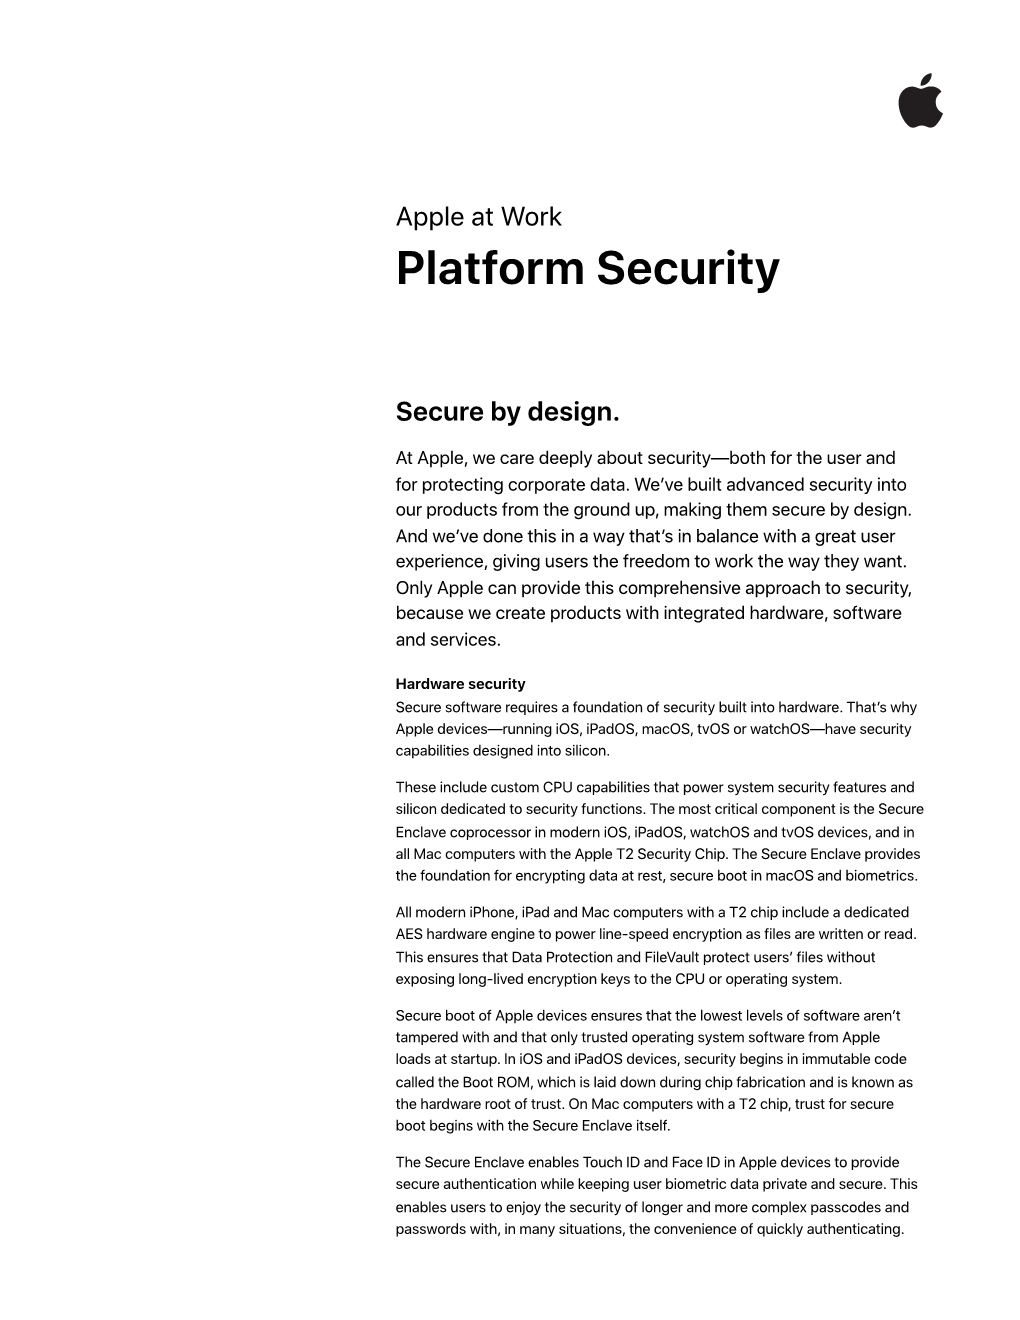 Platform Security